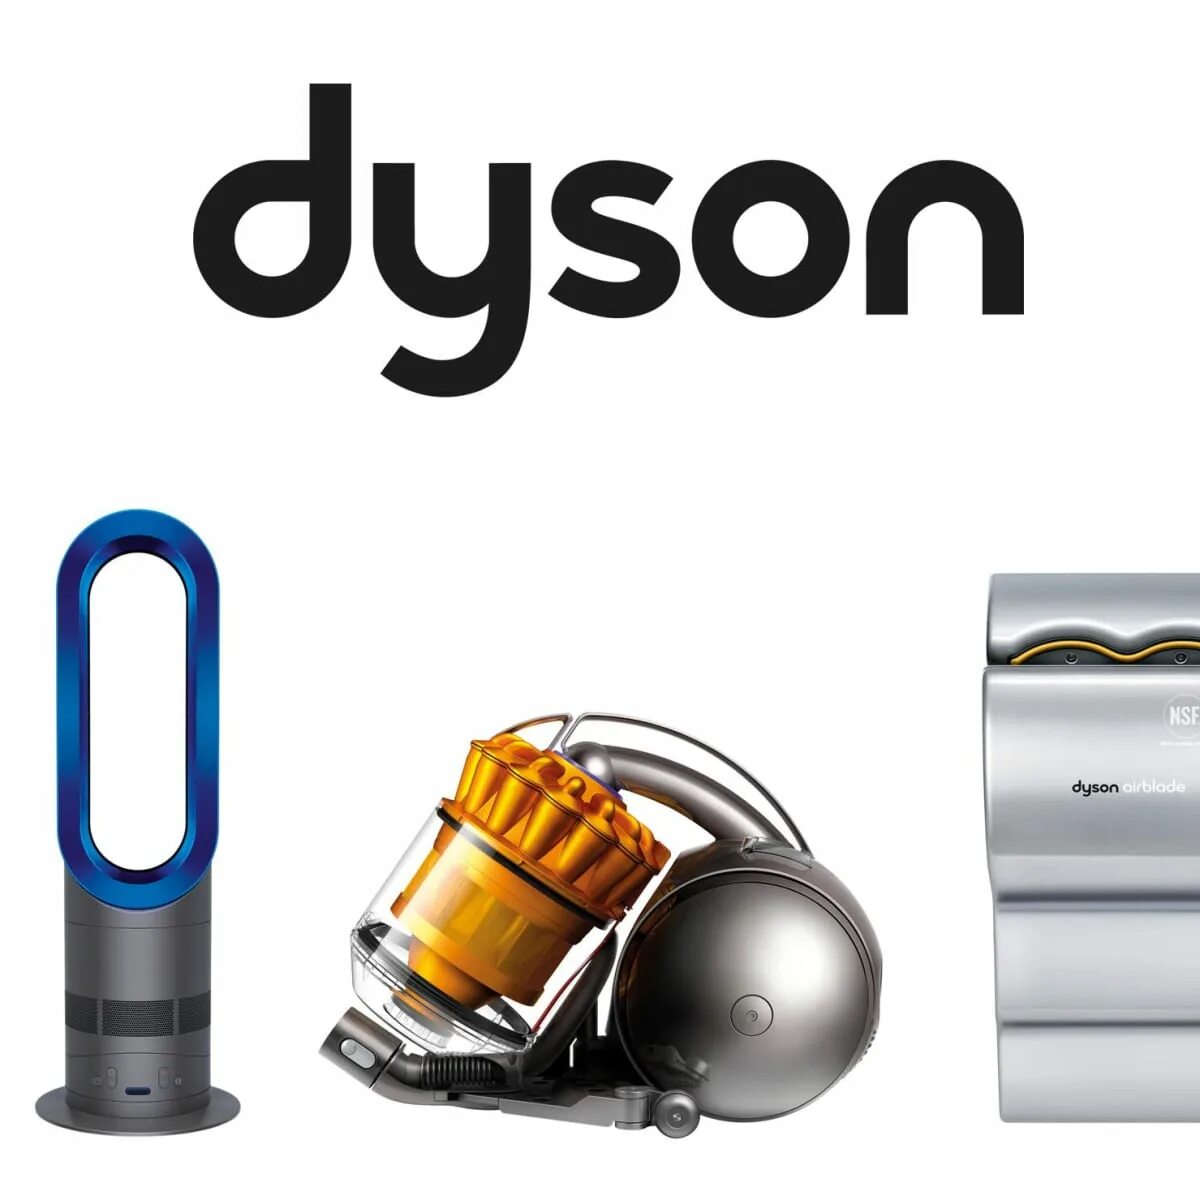 Dyson. Дайсон бренд. Дайсон логотип. Пылесос Dyson логотип.